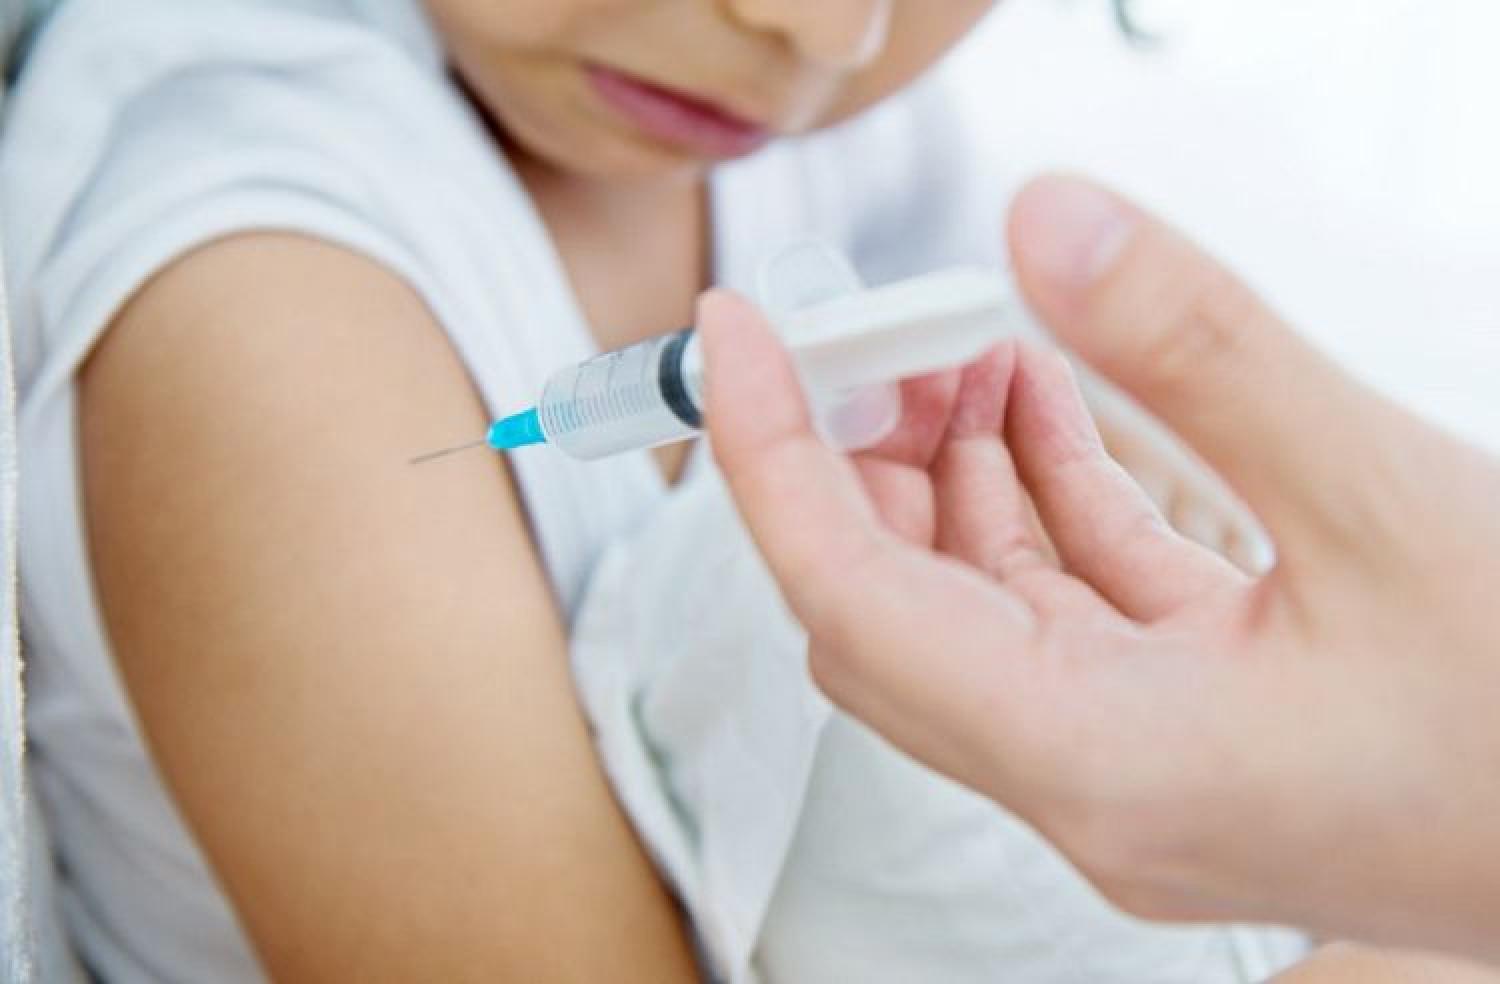 Θα μπει το εμβόλιο του κορωνοϊού στον υποχρεωτικό εμβολιασμό παιδιών που πάνε σχολείο;